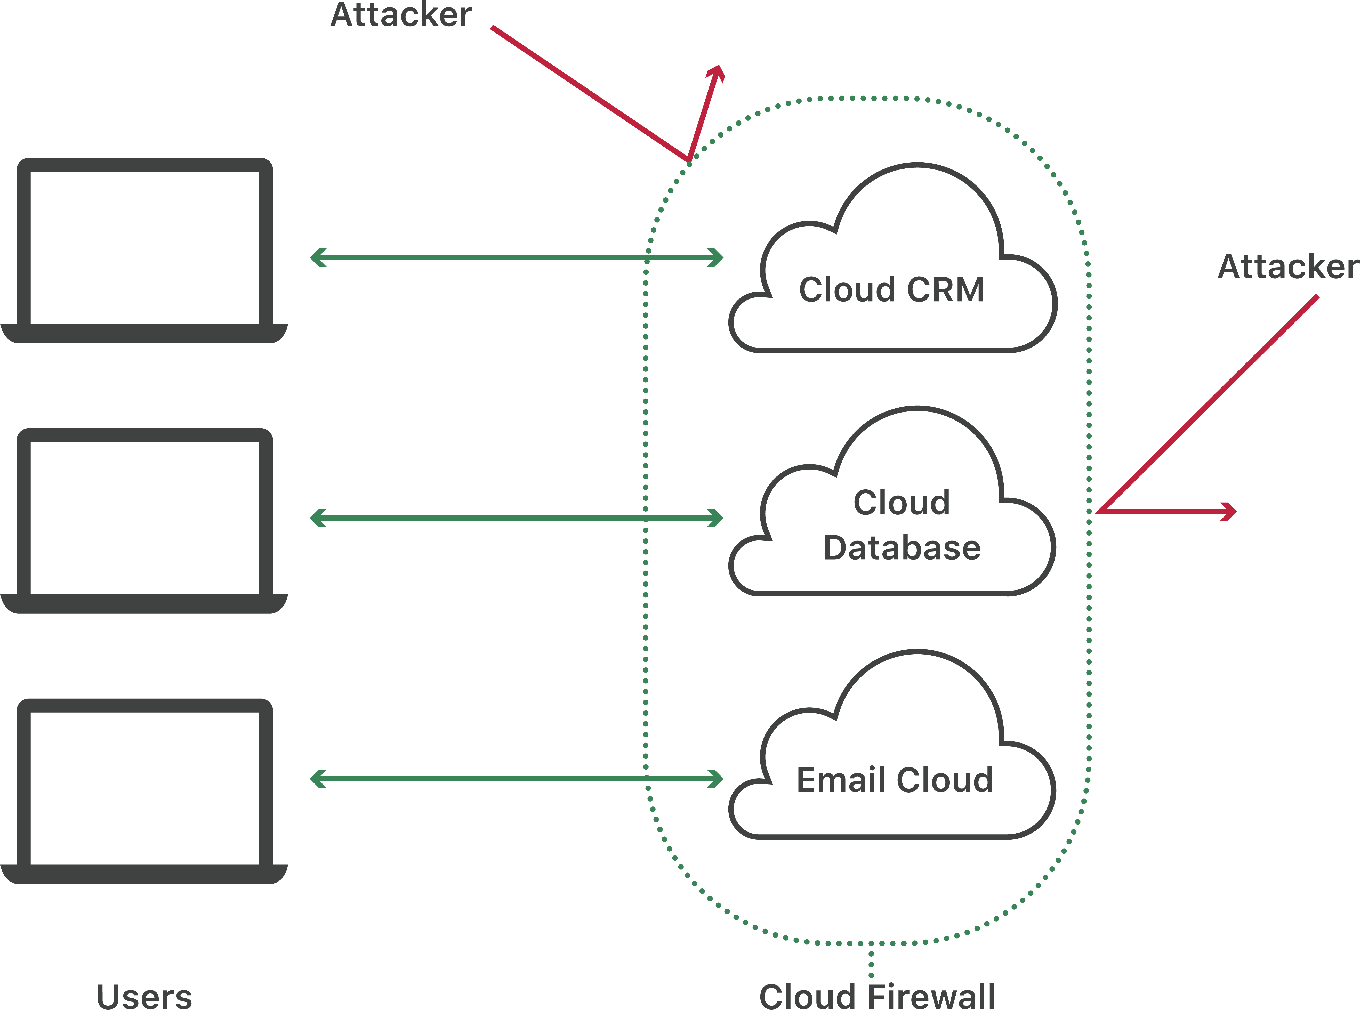 O firewall em nuvem bloqueia ataques às implementações em nuvem